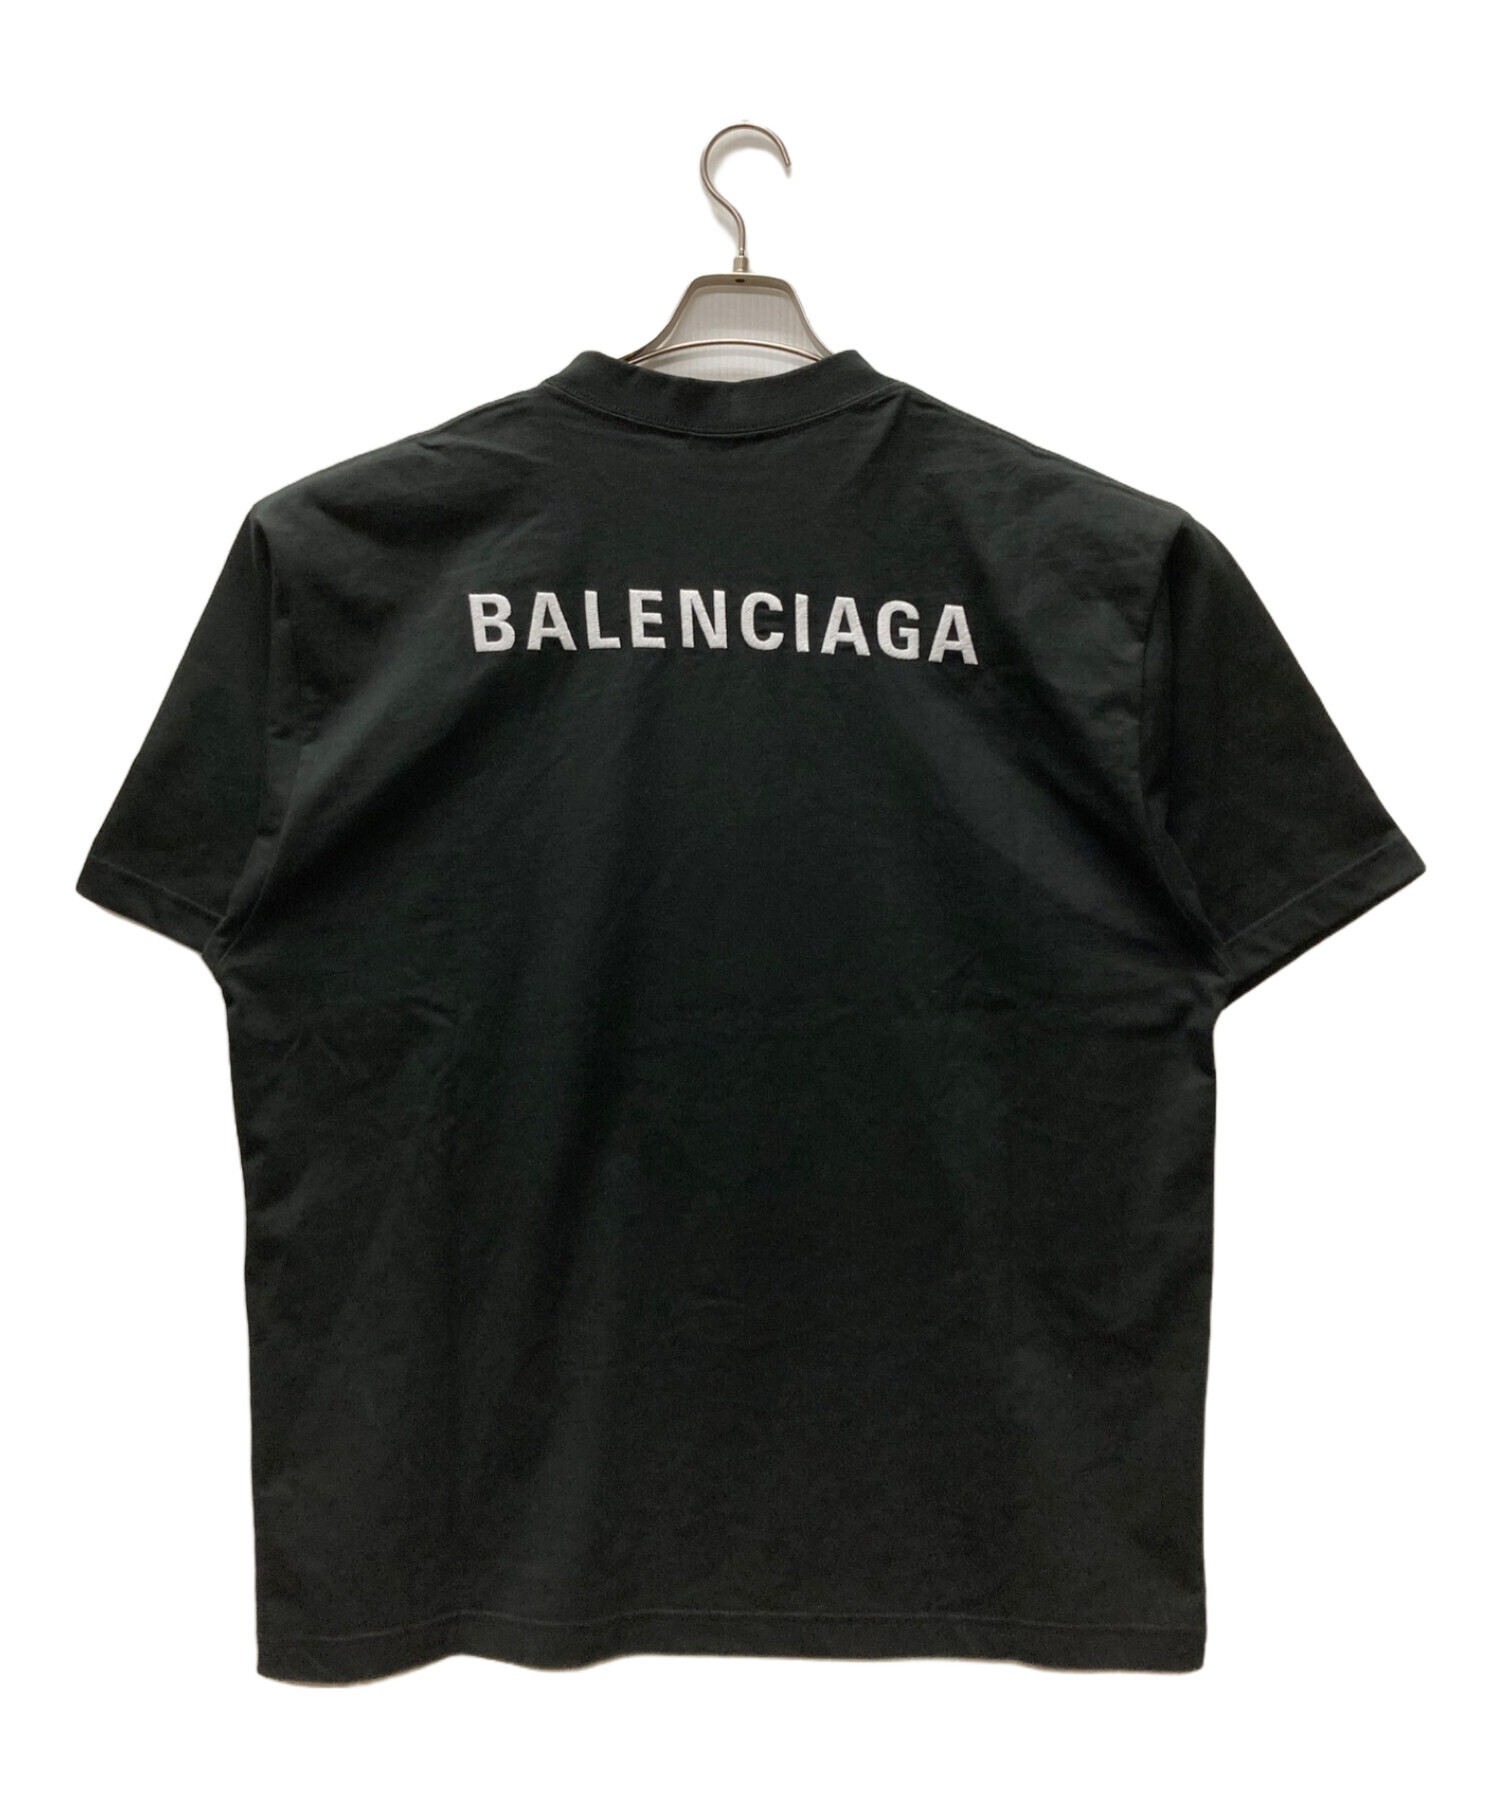 BALENCIAGA (バレンシアガ) ミディアムフィットロゴTシャツ ブラック サイズ:L